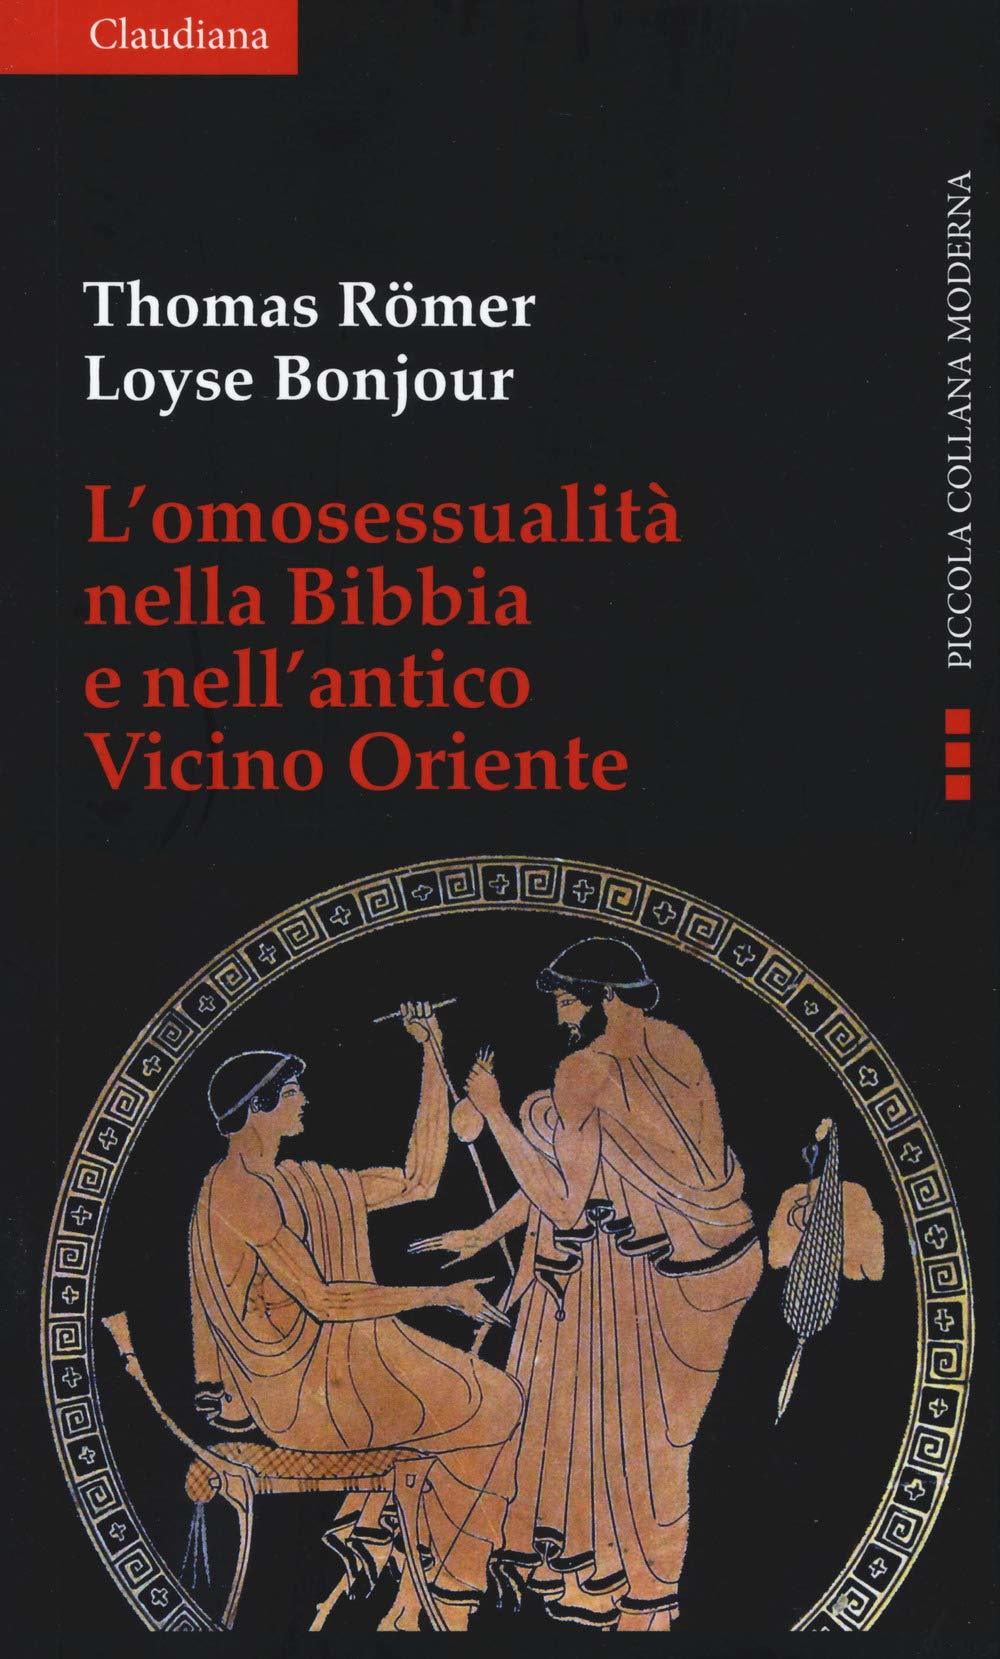 T. Römer, Loyse Bonjour: L'omosessualità nella Bibbia e nel vicino Oriente (Paperback, Italiano language, 2019, Claudiana)